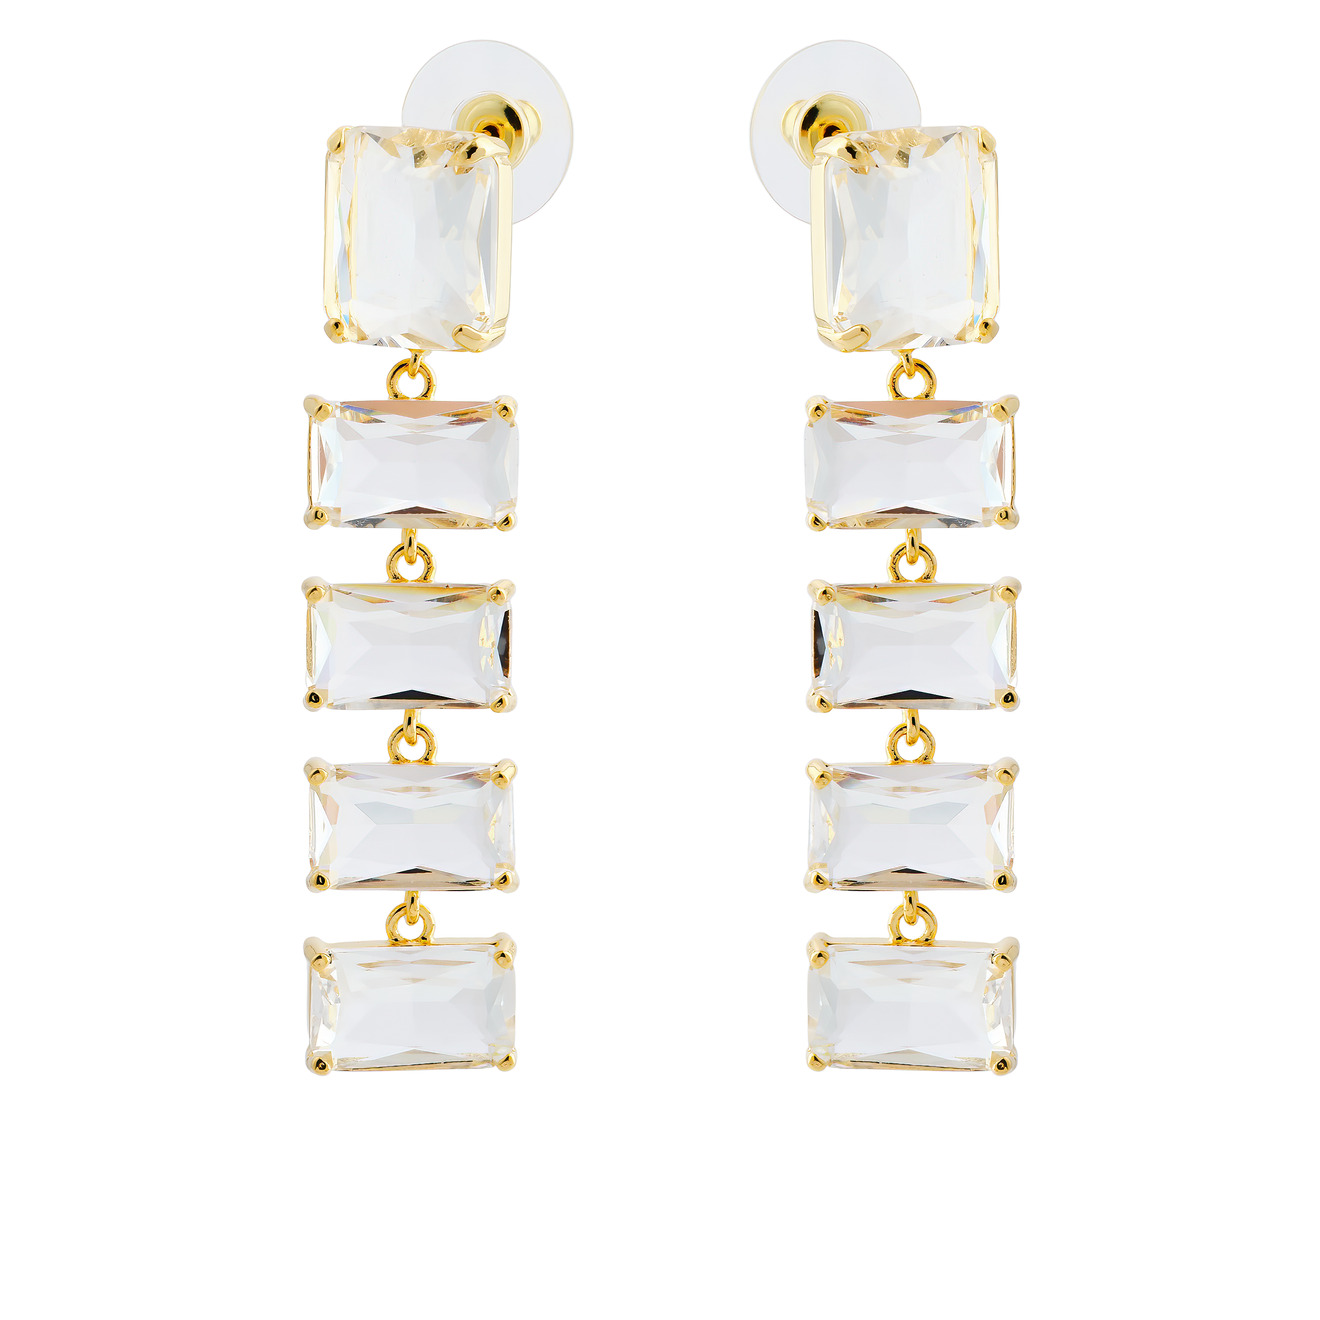 Herald Percy Золотистые длинные серьги с крупными кристаллами herald percy золотистые серьги стрелки с кристаллами